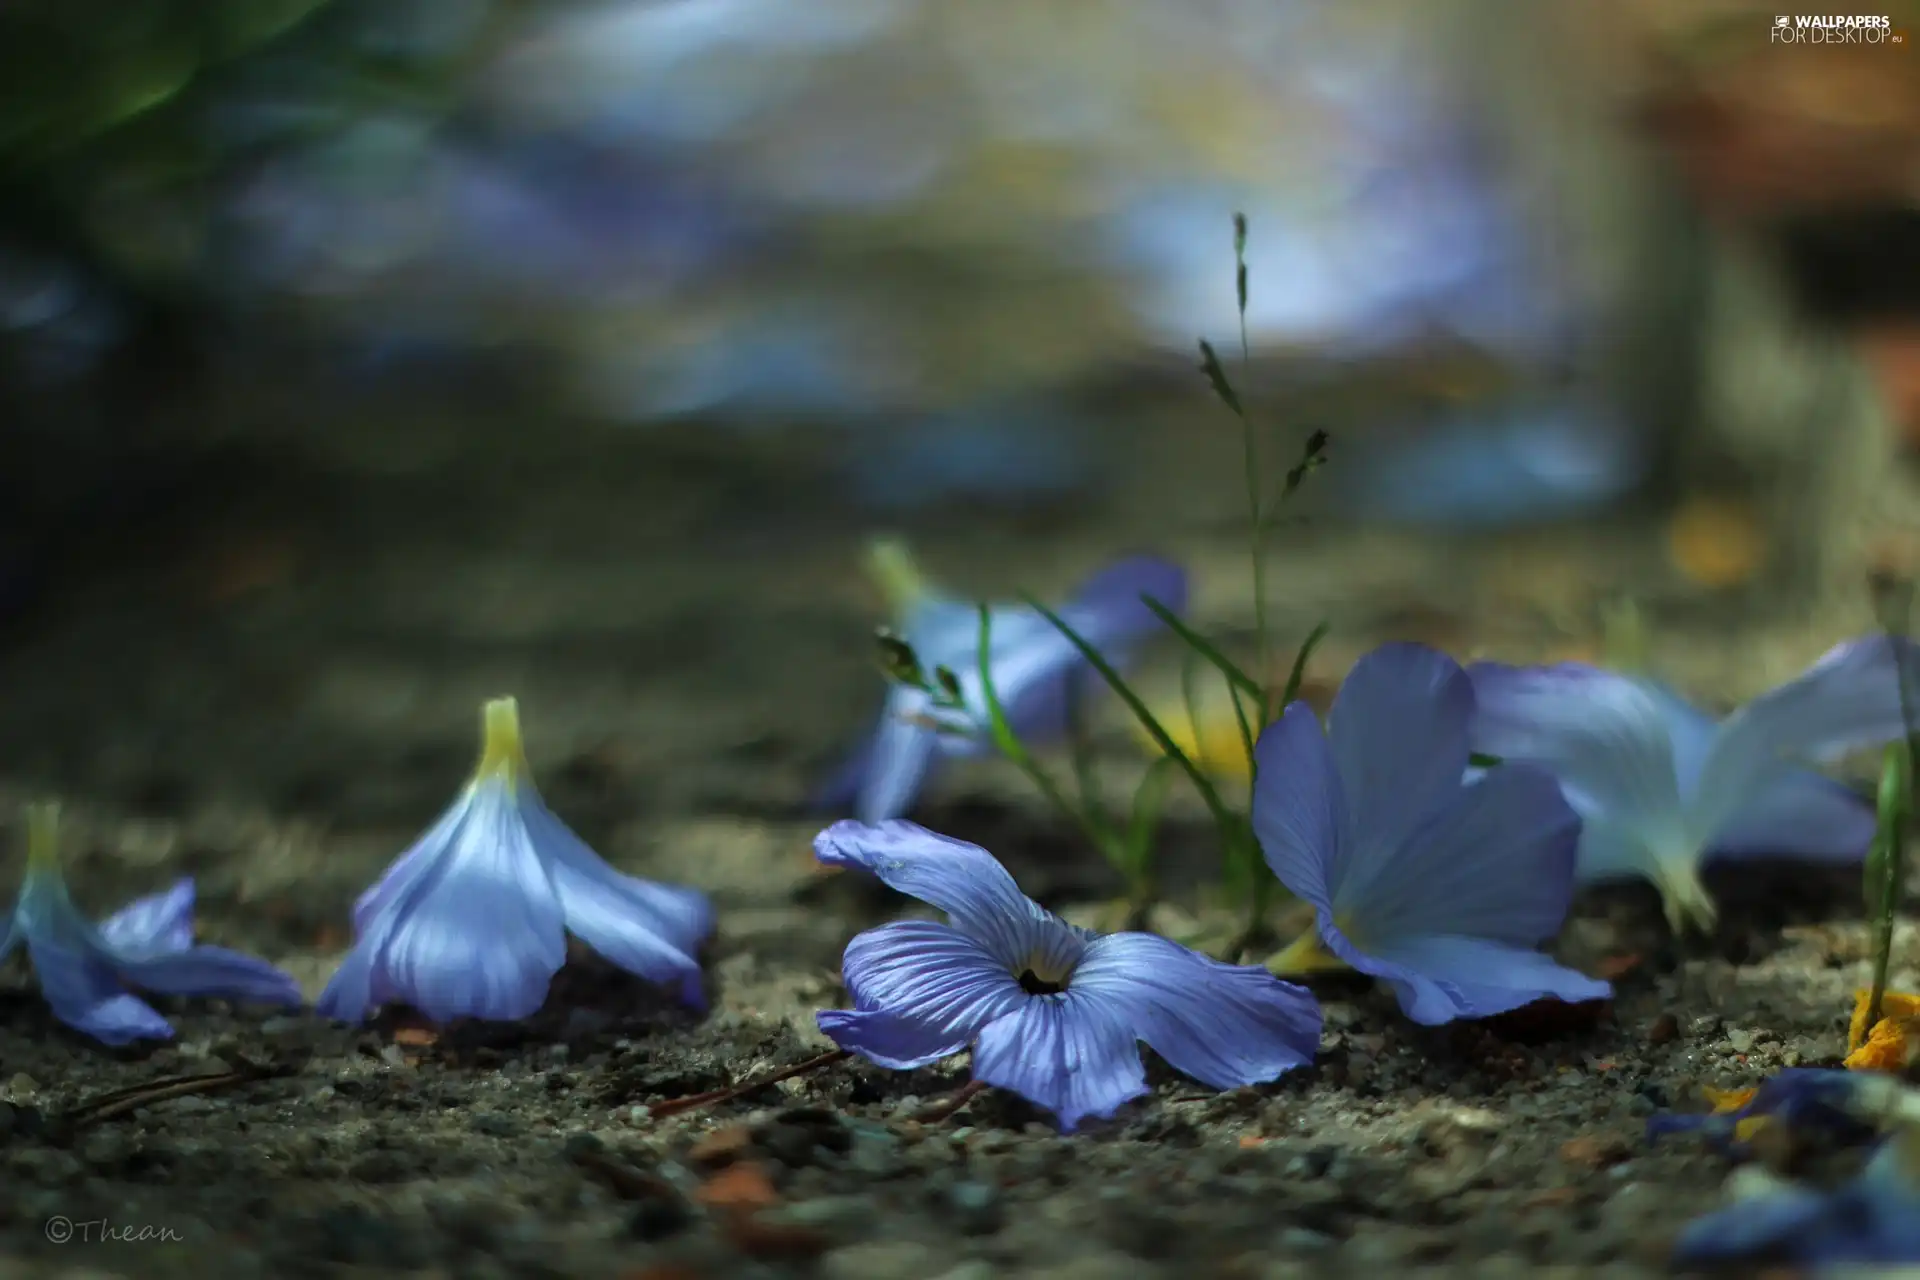 Flowers, purple, ringtones